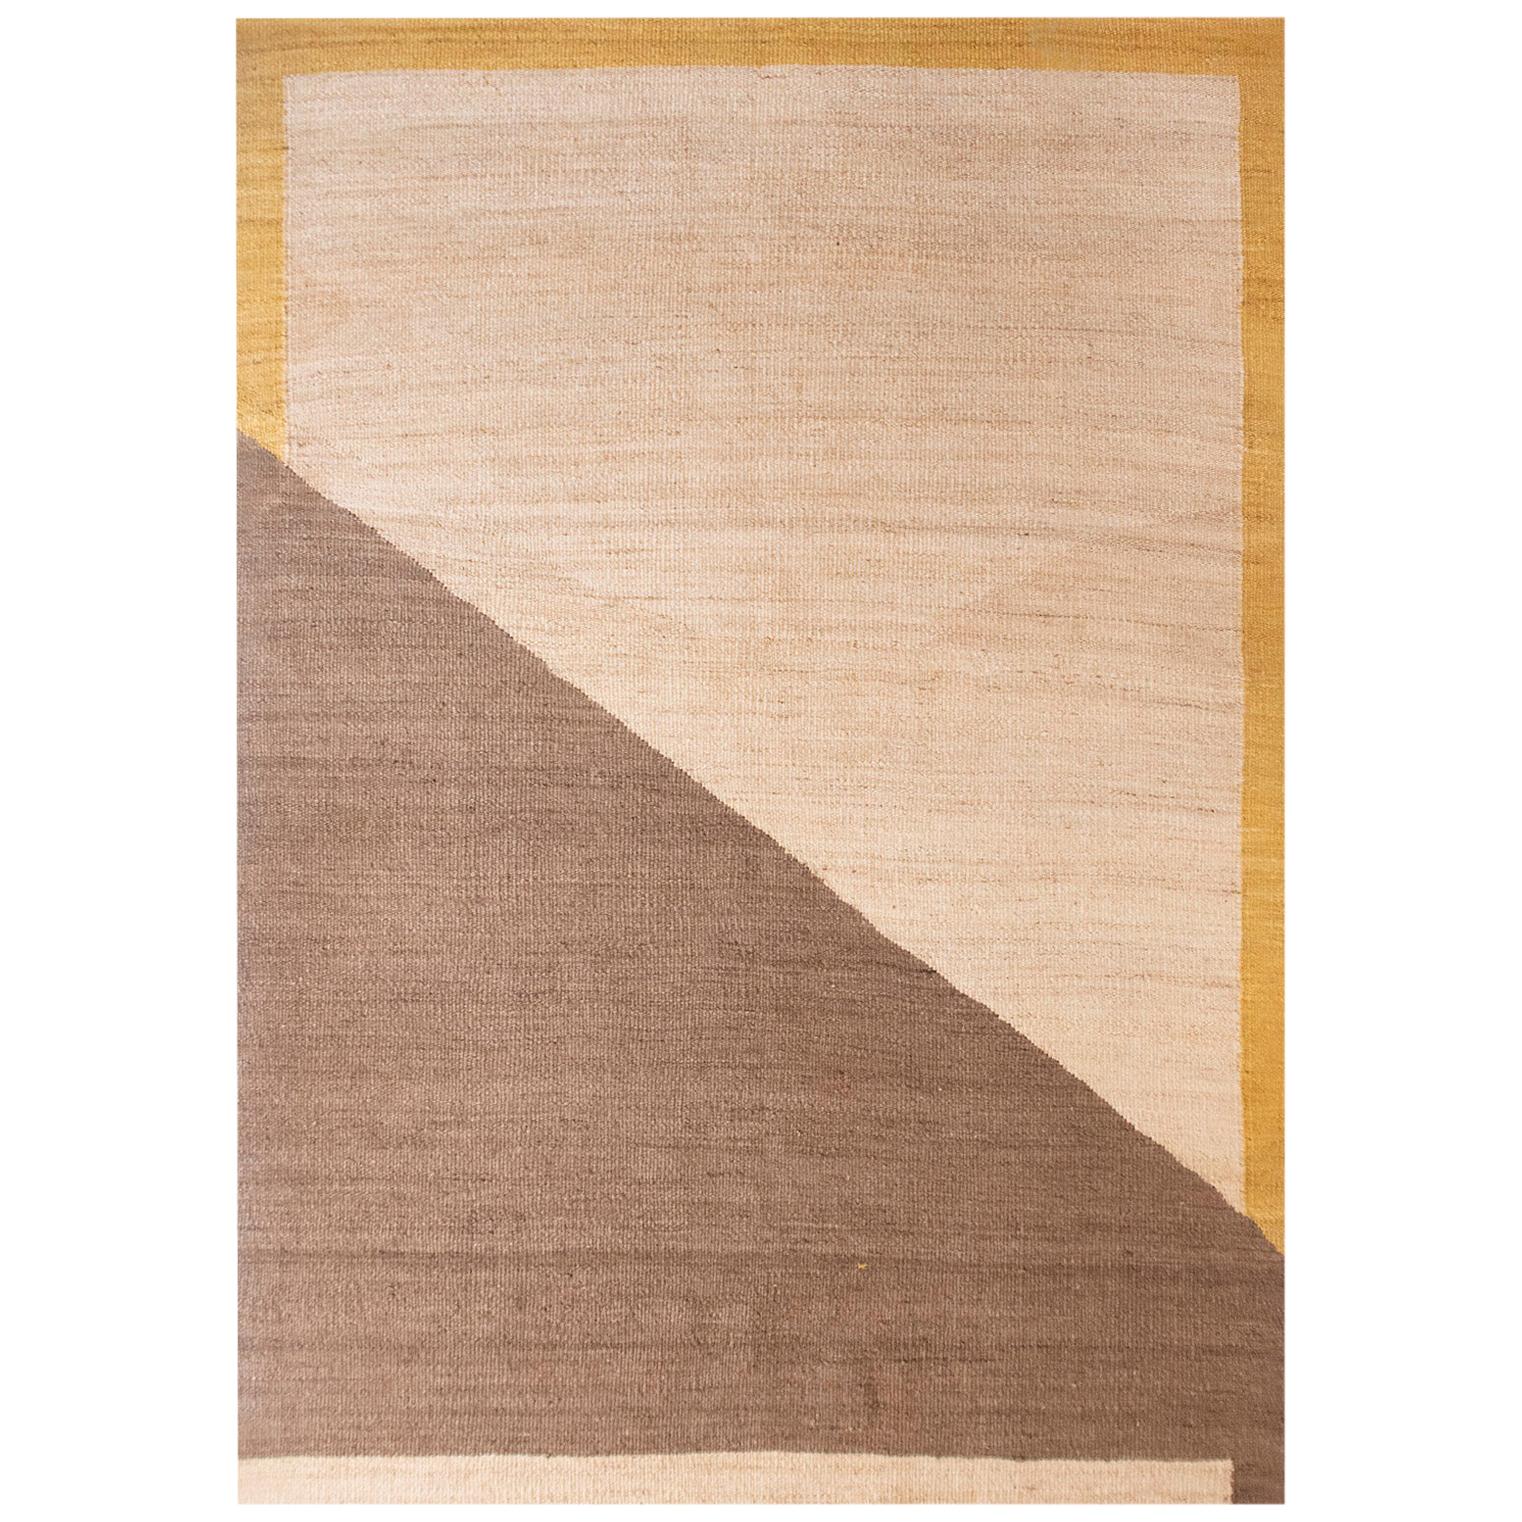 Moderner handgewebter Flachgewebe Jute-Kelim-Teppich in natürlichem braunem Senf, geometrisch